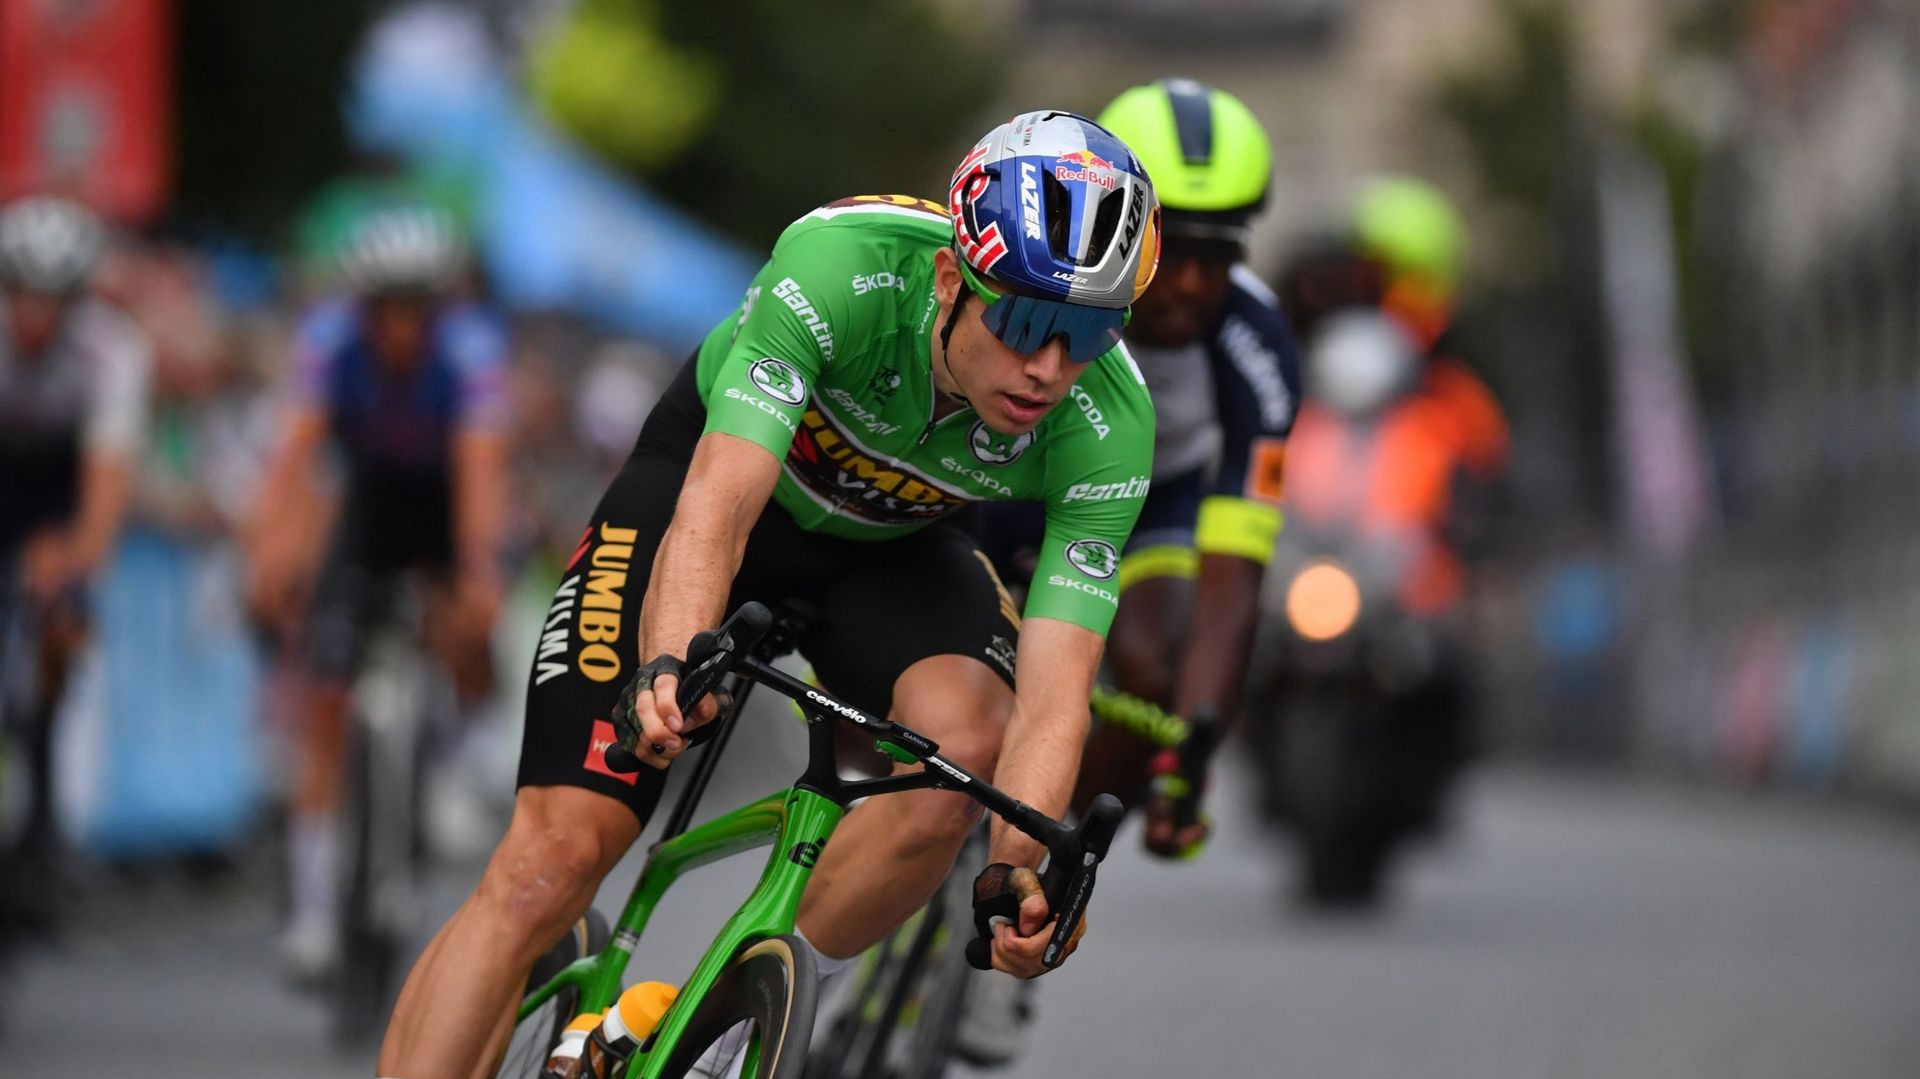 Dans un message publié vendredi sur Twitter, Wout van Aert a exprimé son mécontentement face aux frais de voyage élevés des coureurs qui se rendent aux championnats du monde de cyclisme à Wollongong, en Australie.